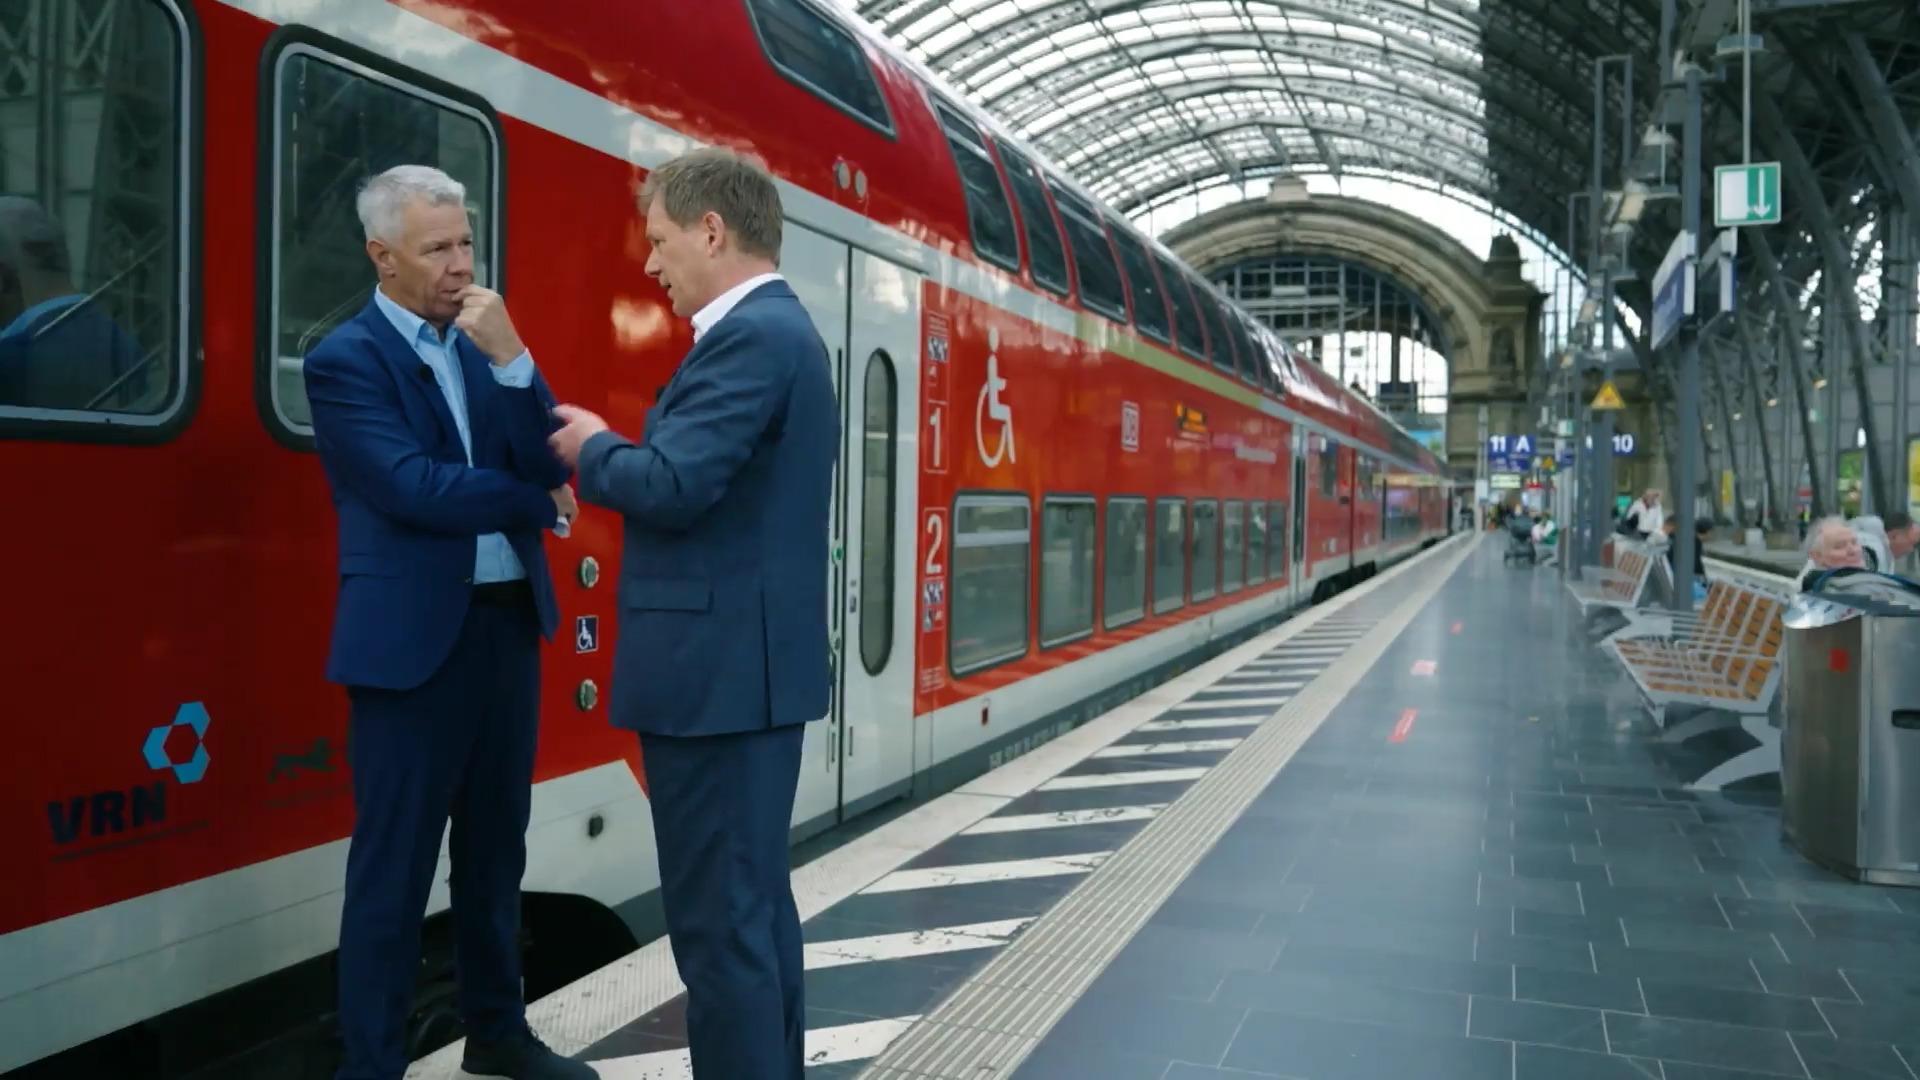 Darum ist die Deutsche Bahn so unpünktlich Peter Kloeppel durchleuchtet